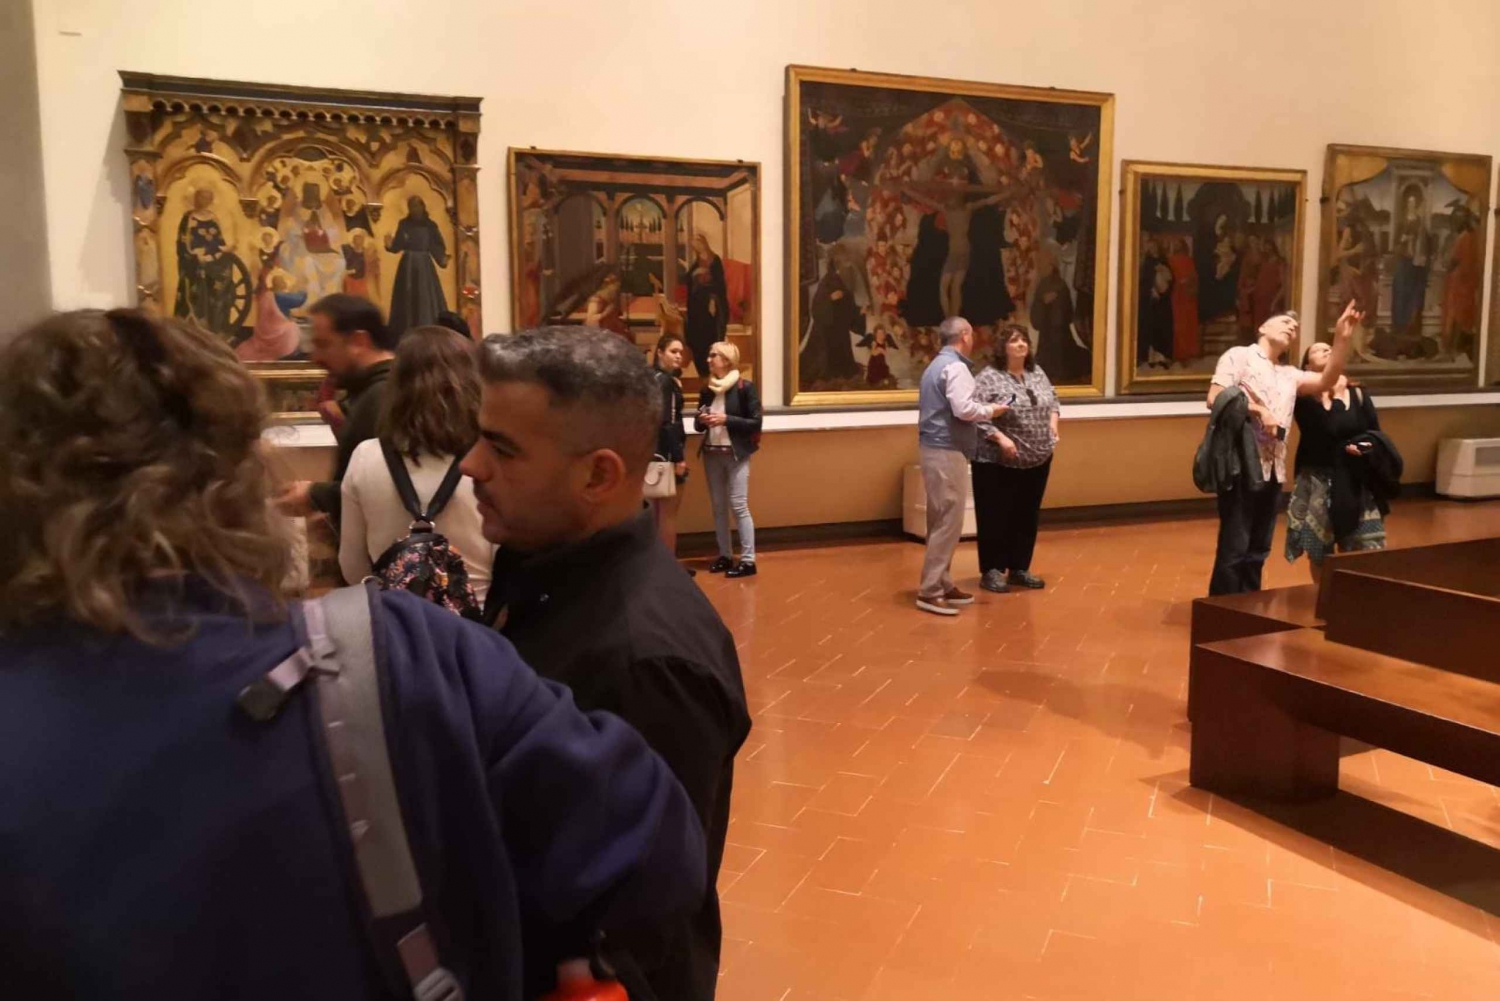 Florença: Galeria Uffizi e visita guiada à Accademia